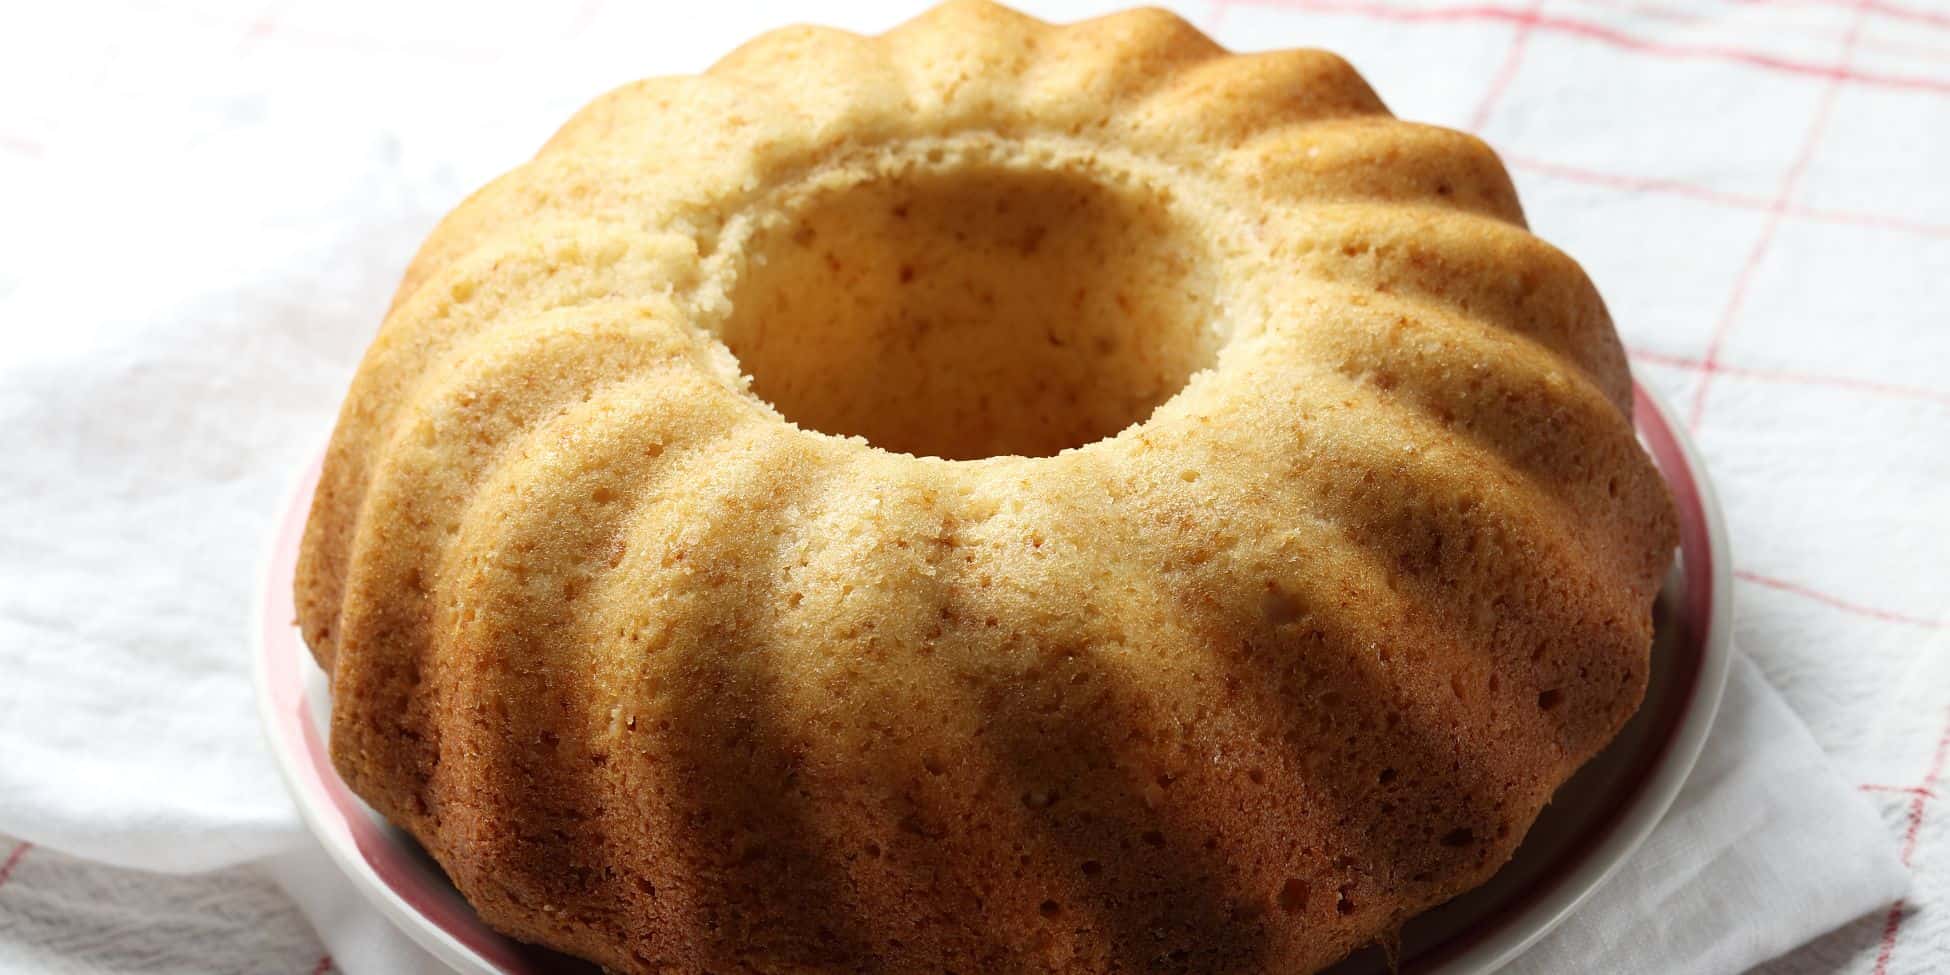 Você está visualizando atualmente Receita de bolo de araruta simples e prático fica pronto em poucos minutos e é uma delícia